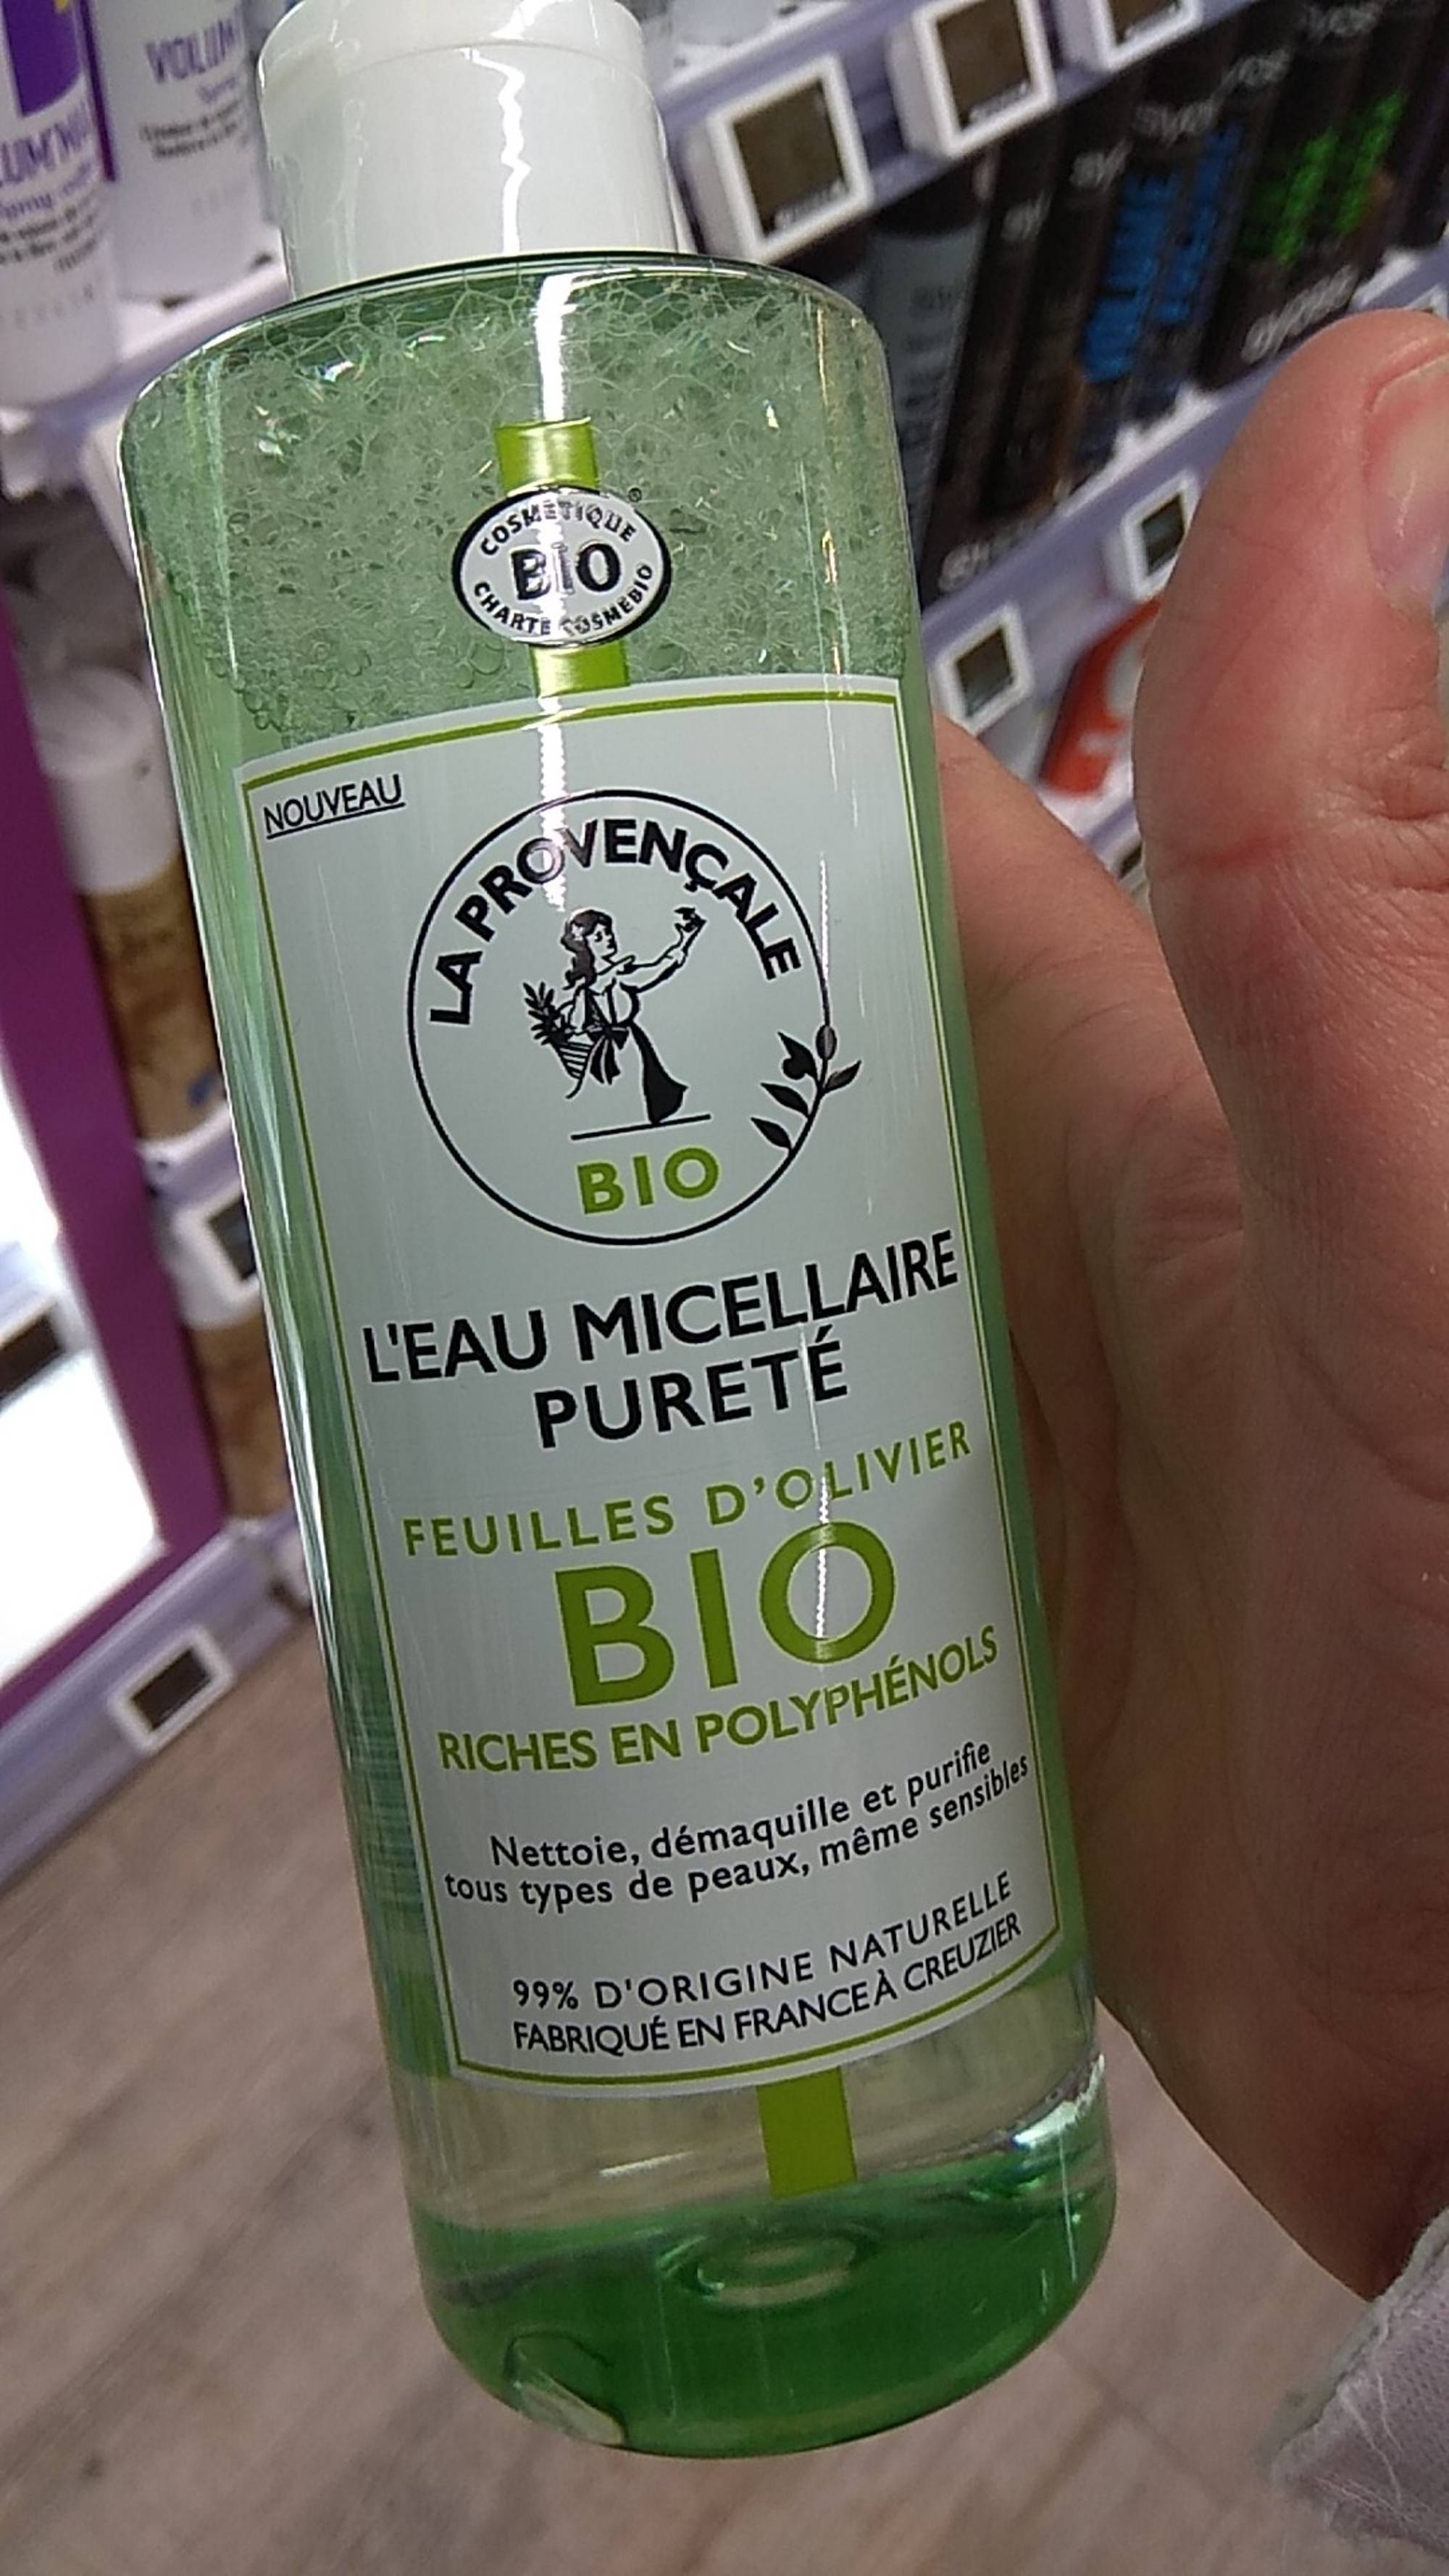 LA PROVENÇALE - Feuilles d'olivier bio - L'Eau micellaire pureté